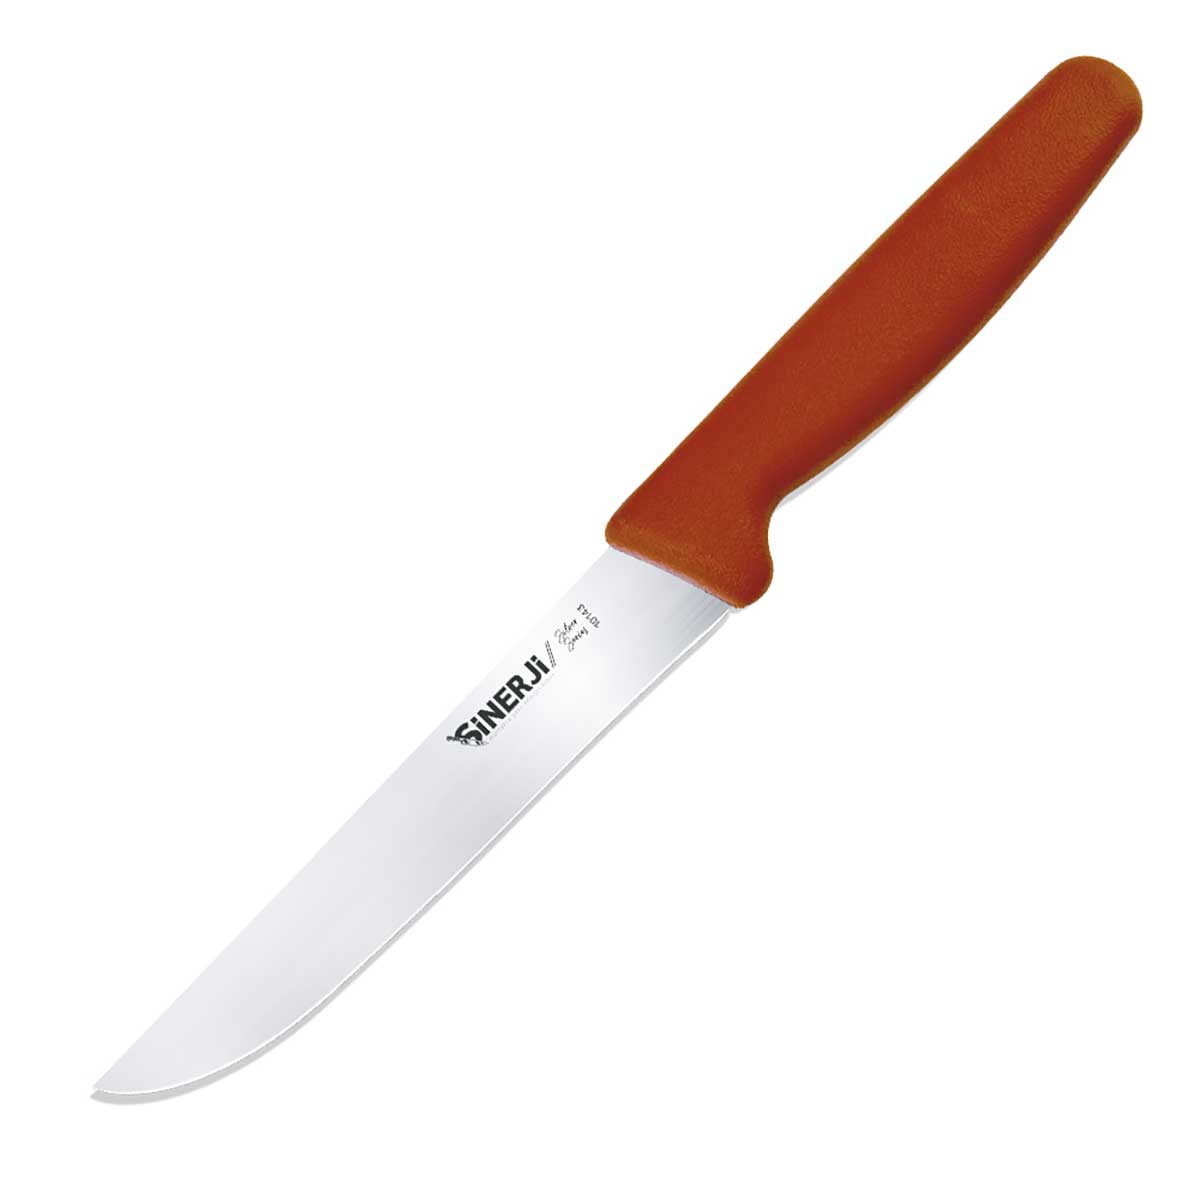 Sinerji Silver Mutfak Bıçağı – 10143 Genel Amaçlı Mutfak Bıçağı